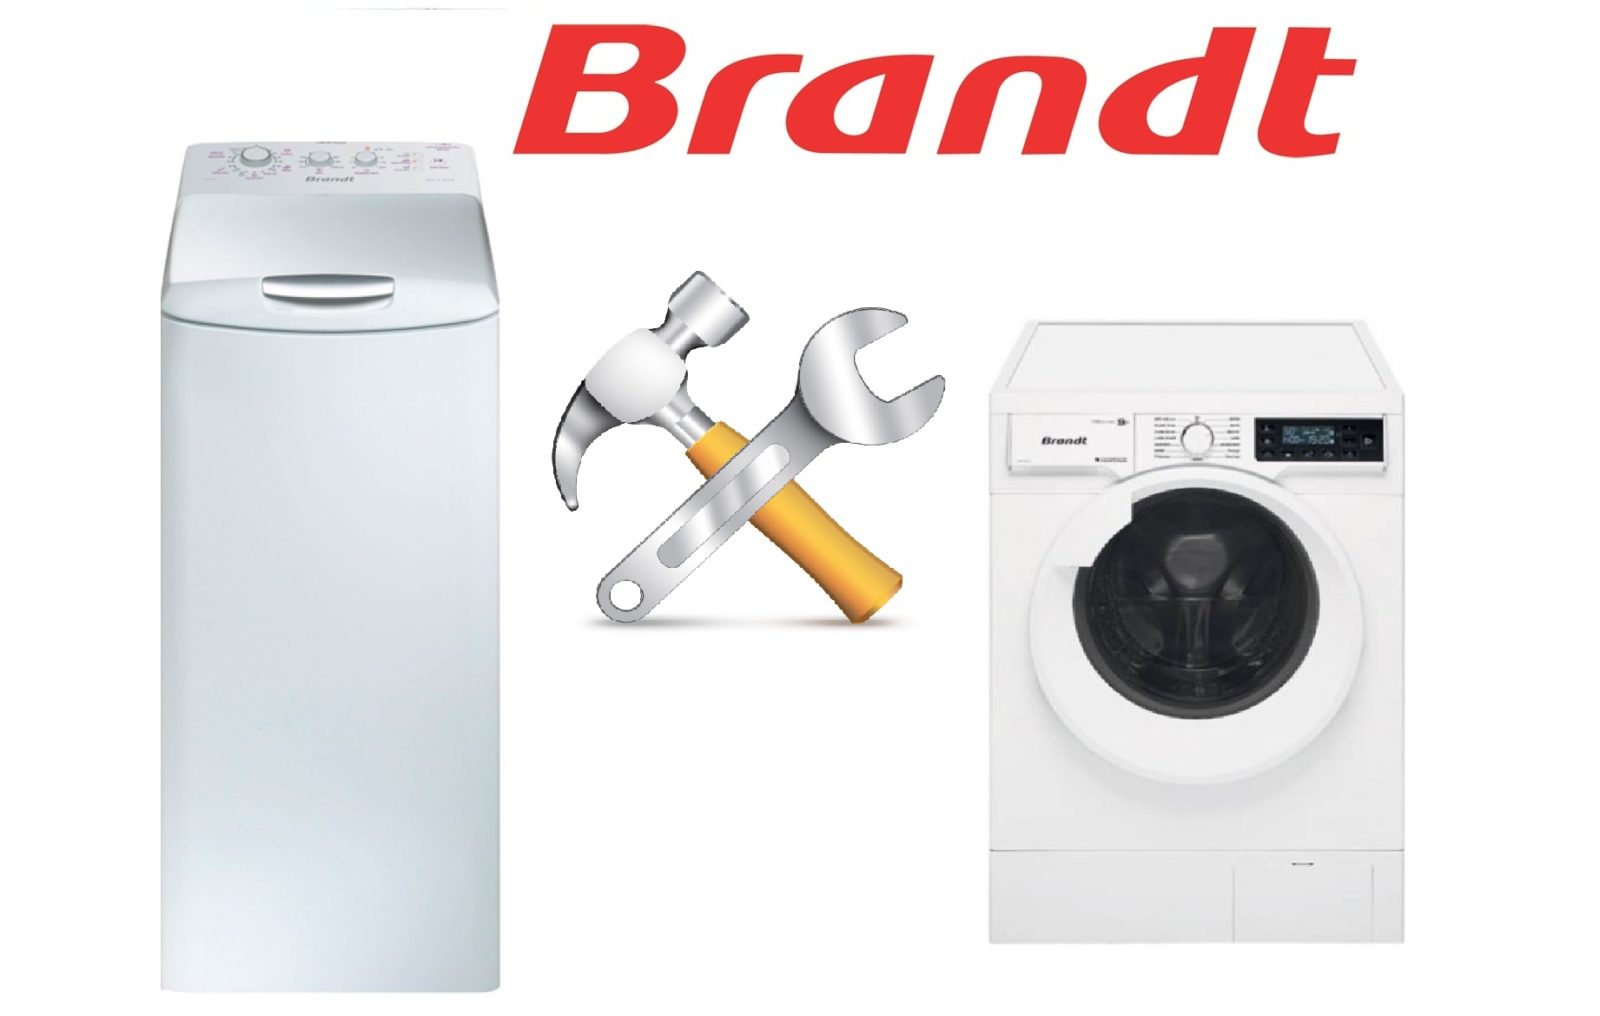 Reparatur einer Brandt-Waschmaschine